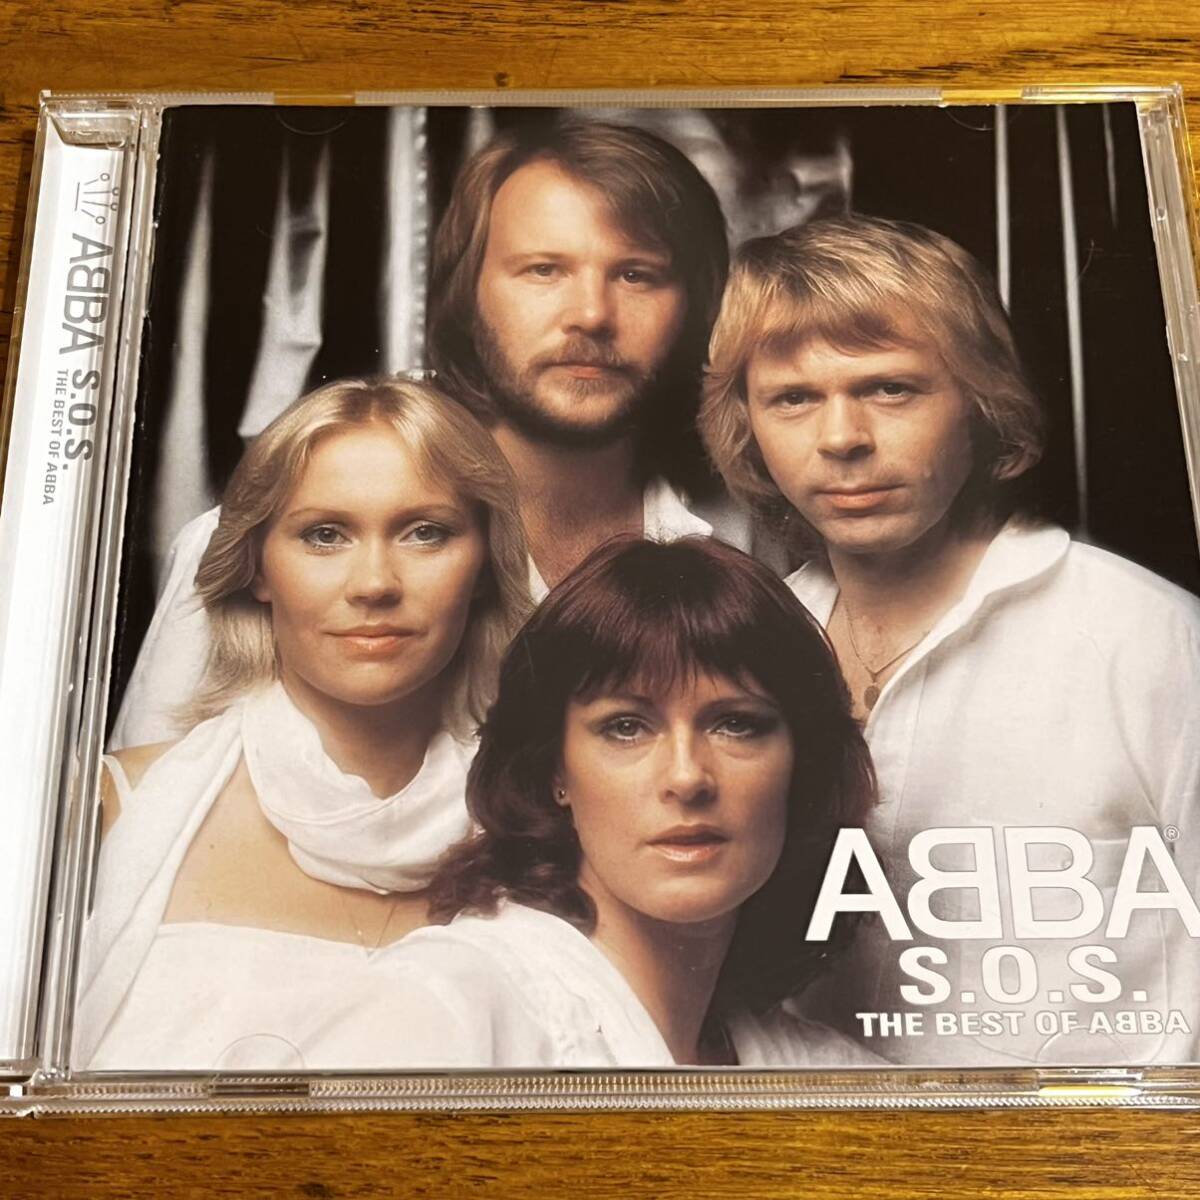 CD アバ ABBA S.O.S THE BEST OF ABBA 日本語解説有り ディスク良好の画像1